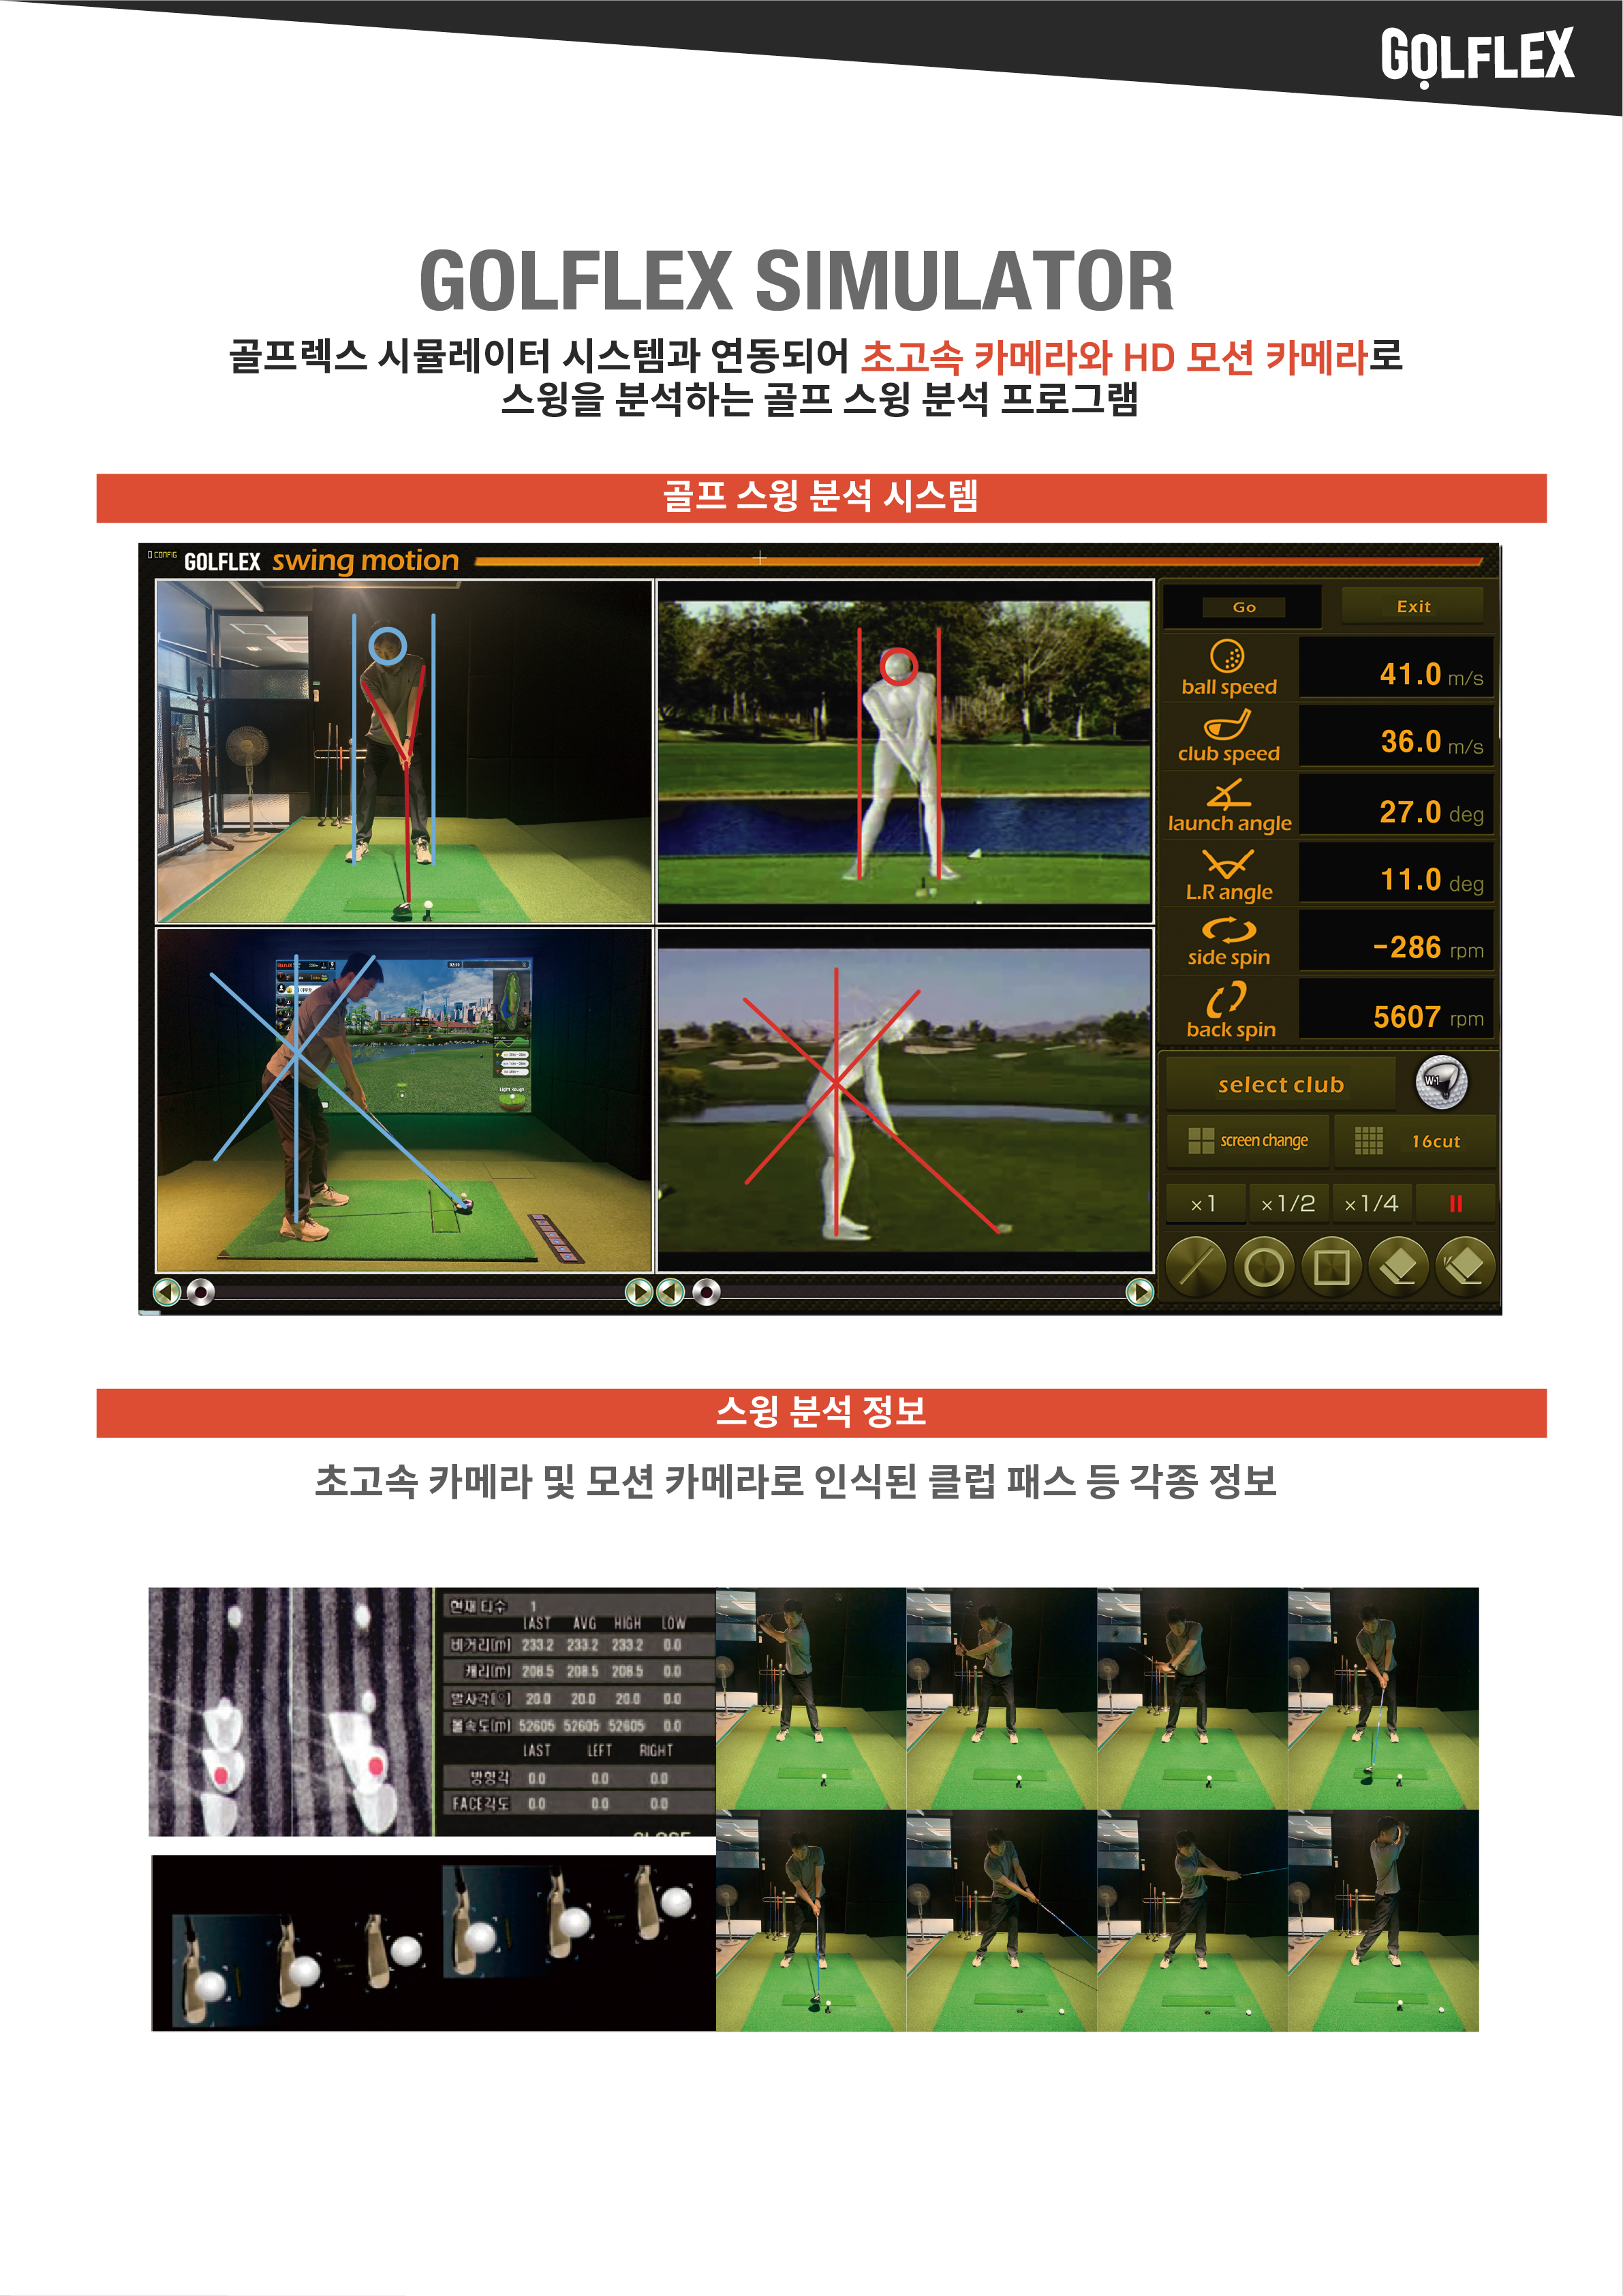 골프렉스 시뮬레이터 시스템과 연동되어 초고속 카메라와 HD 모션 카메라로 스윙을 분석하는 골프 스윙 분석 프로그램